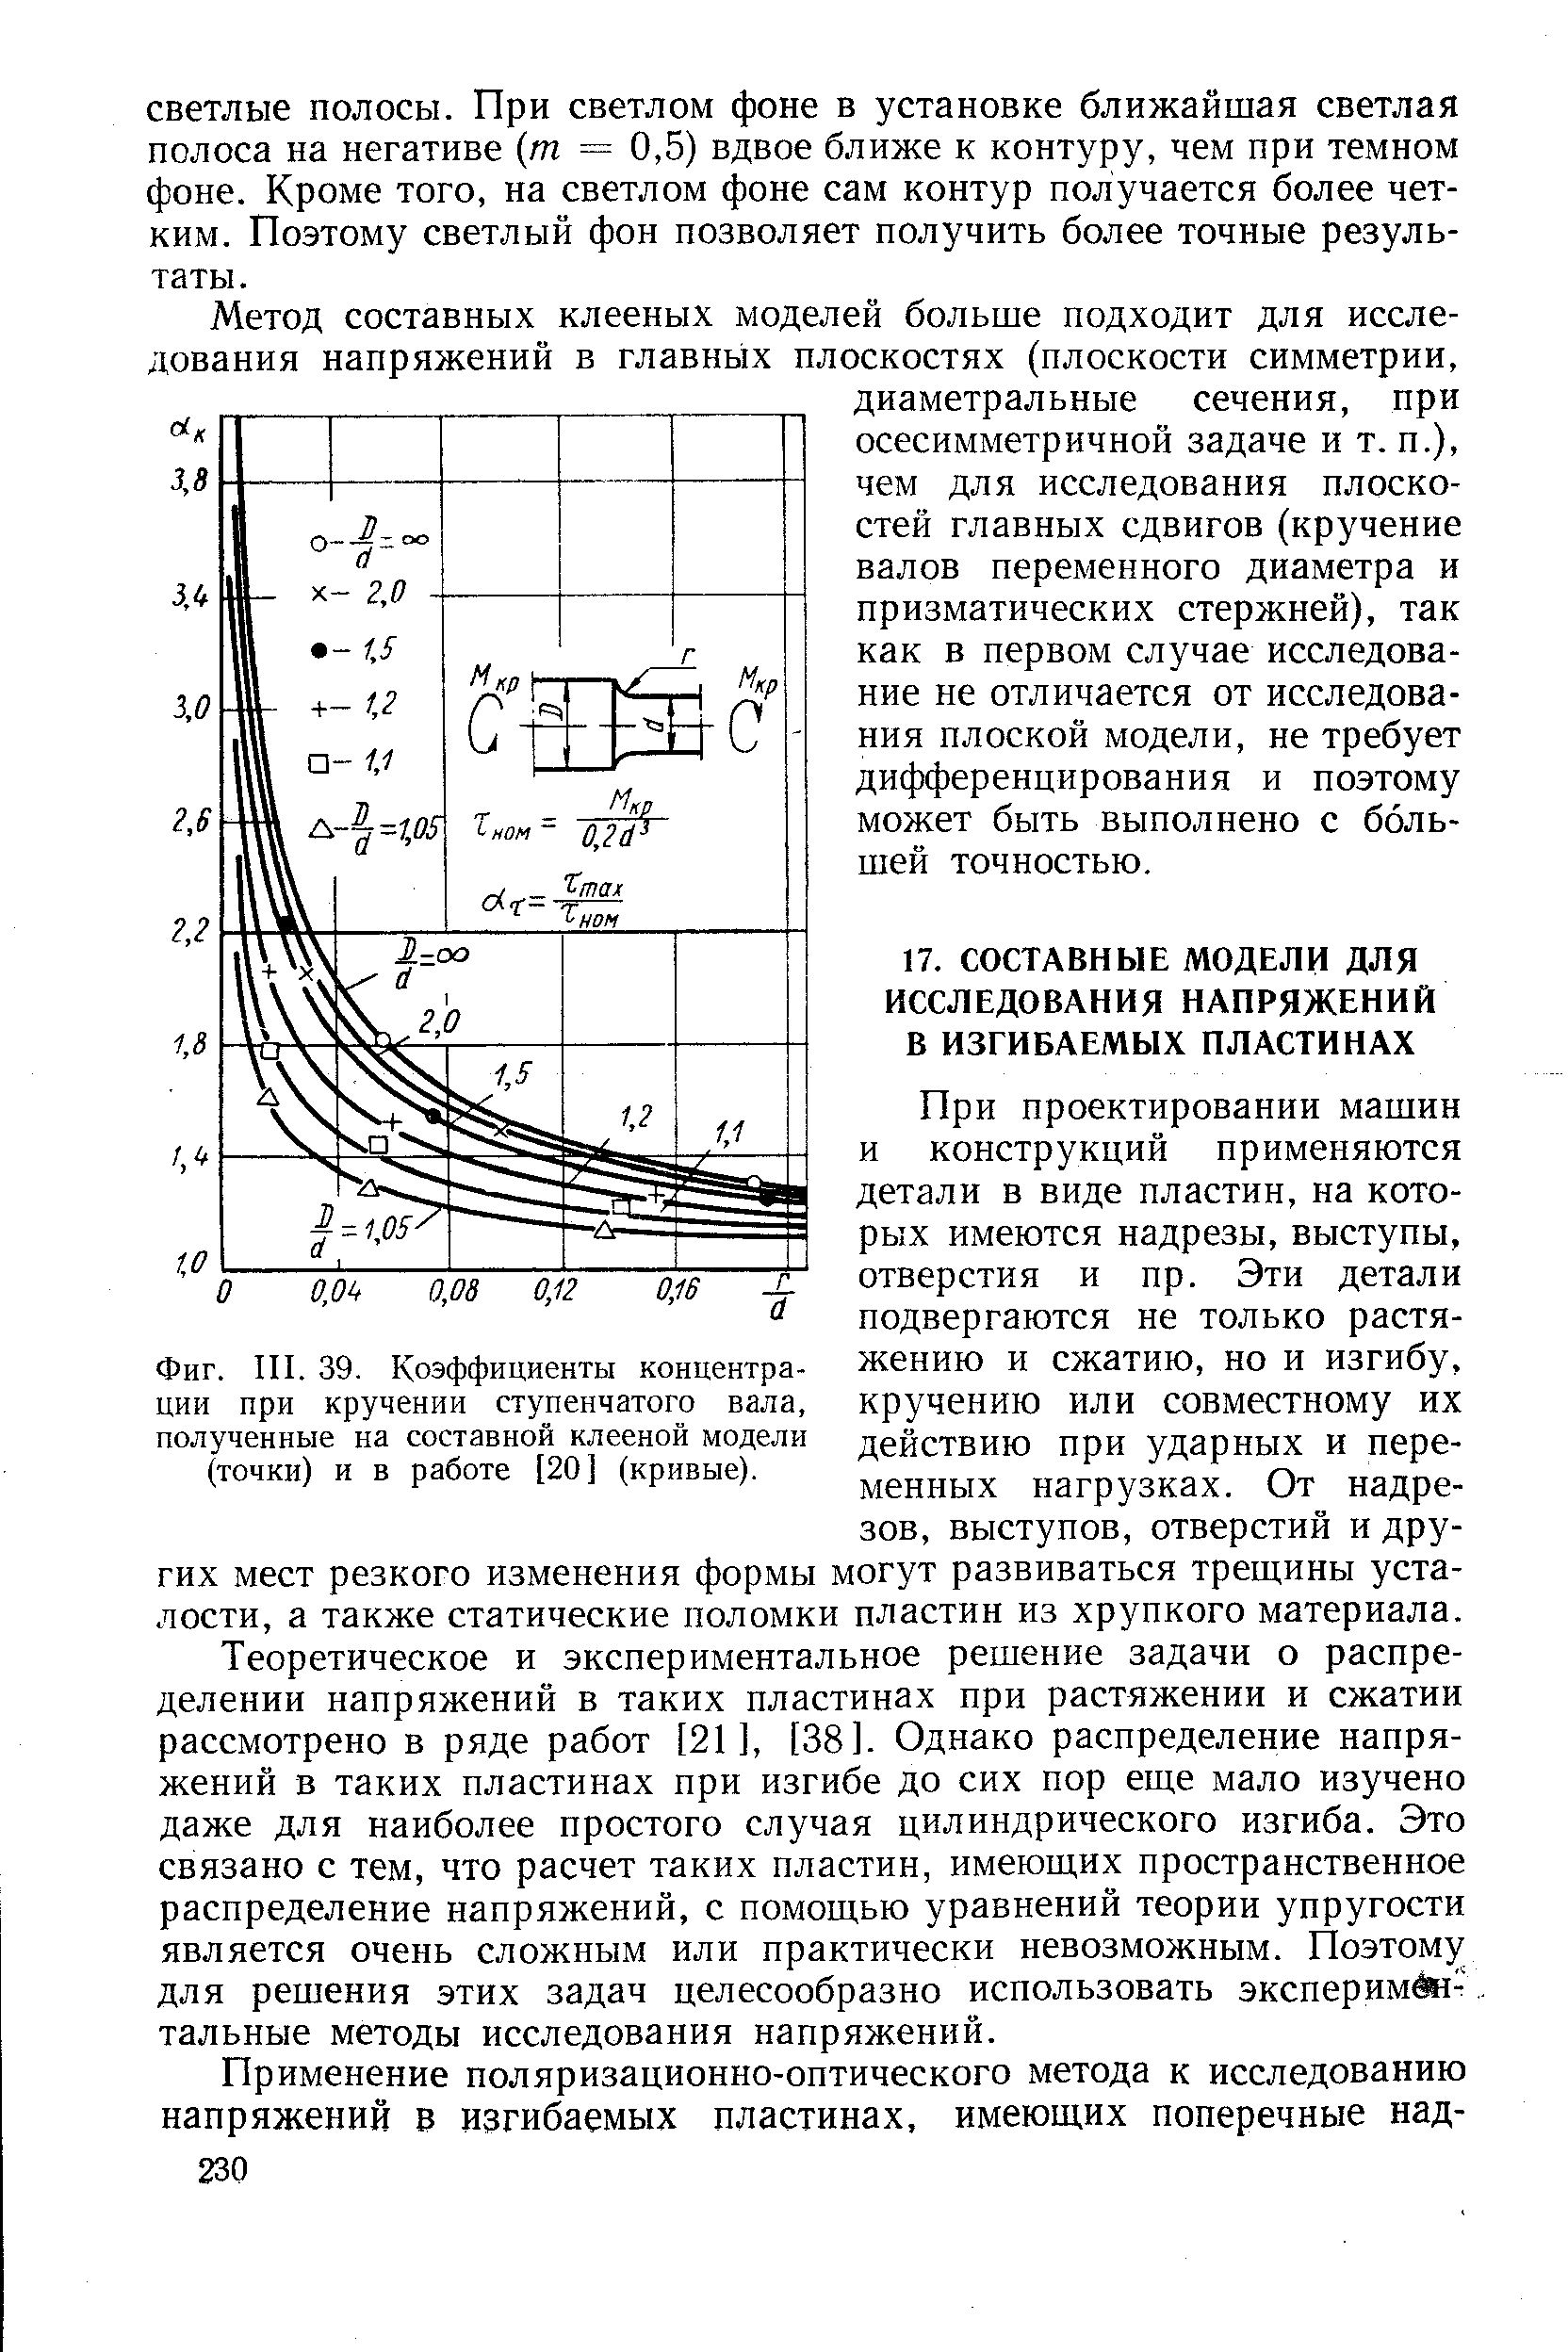 Фиг. III. 39. <a href="/info/74724">Коэффициенты концентрации</a> при кручении ступенчатого вала, полученные на составной клееной модели (точки) и в работе [20] (кривые).
